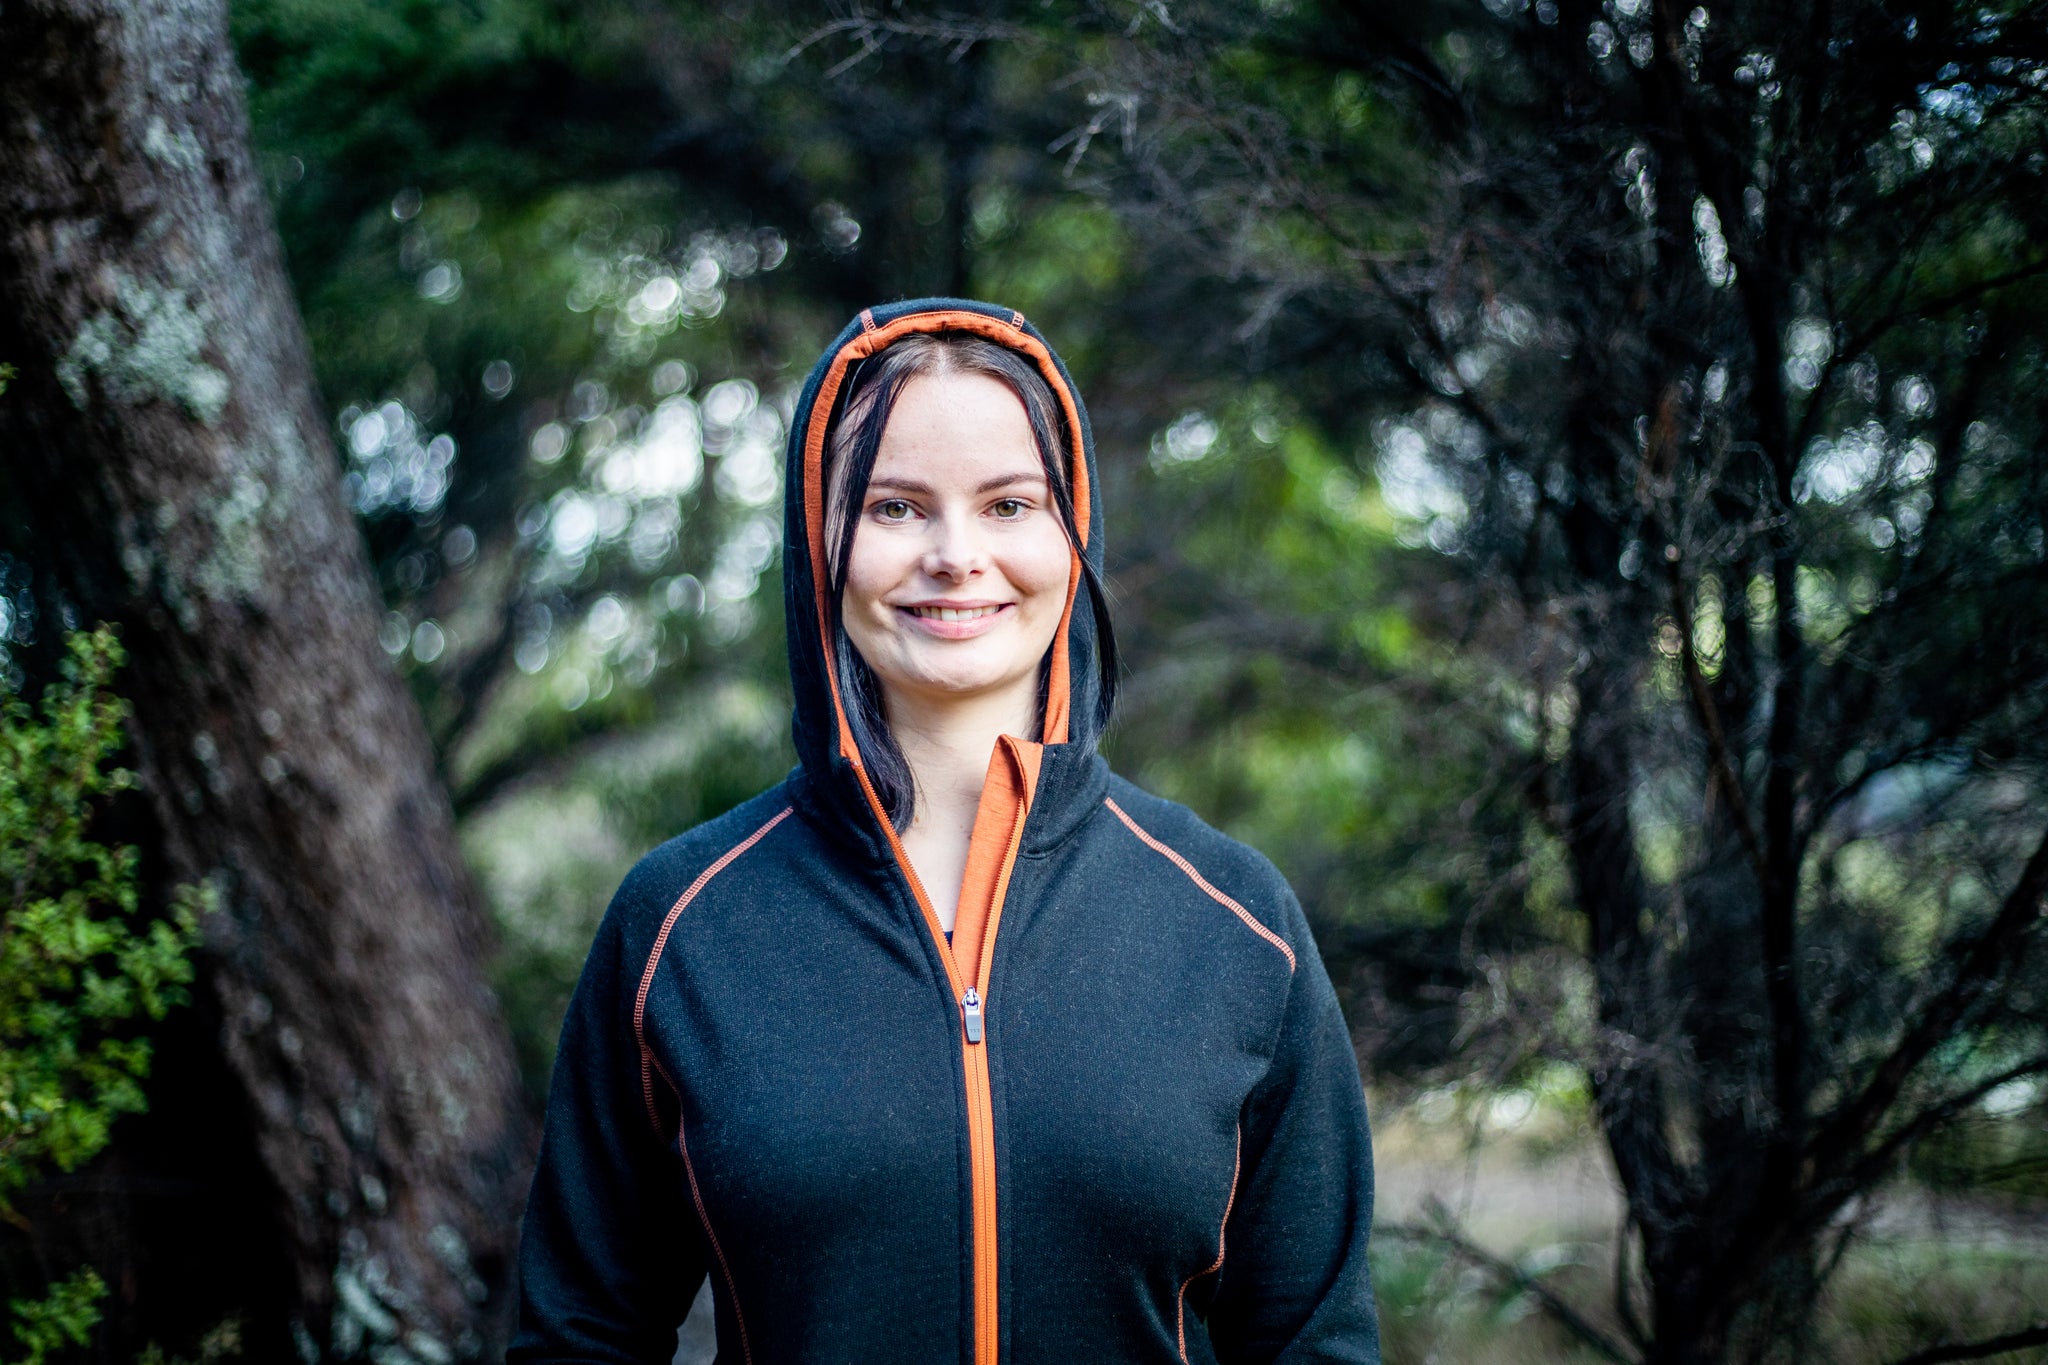 Ladies Merino/Tencel Full Zip Jacket with Hood. Made in New Zealand.